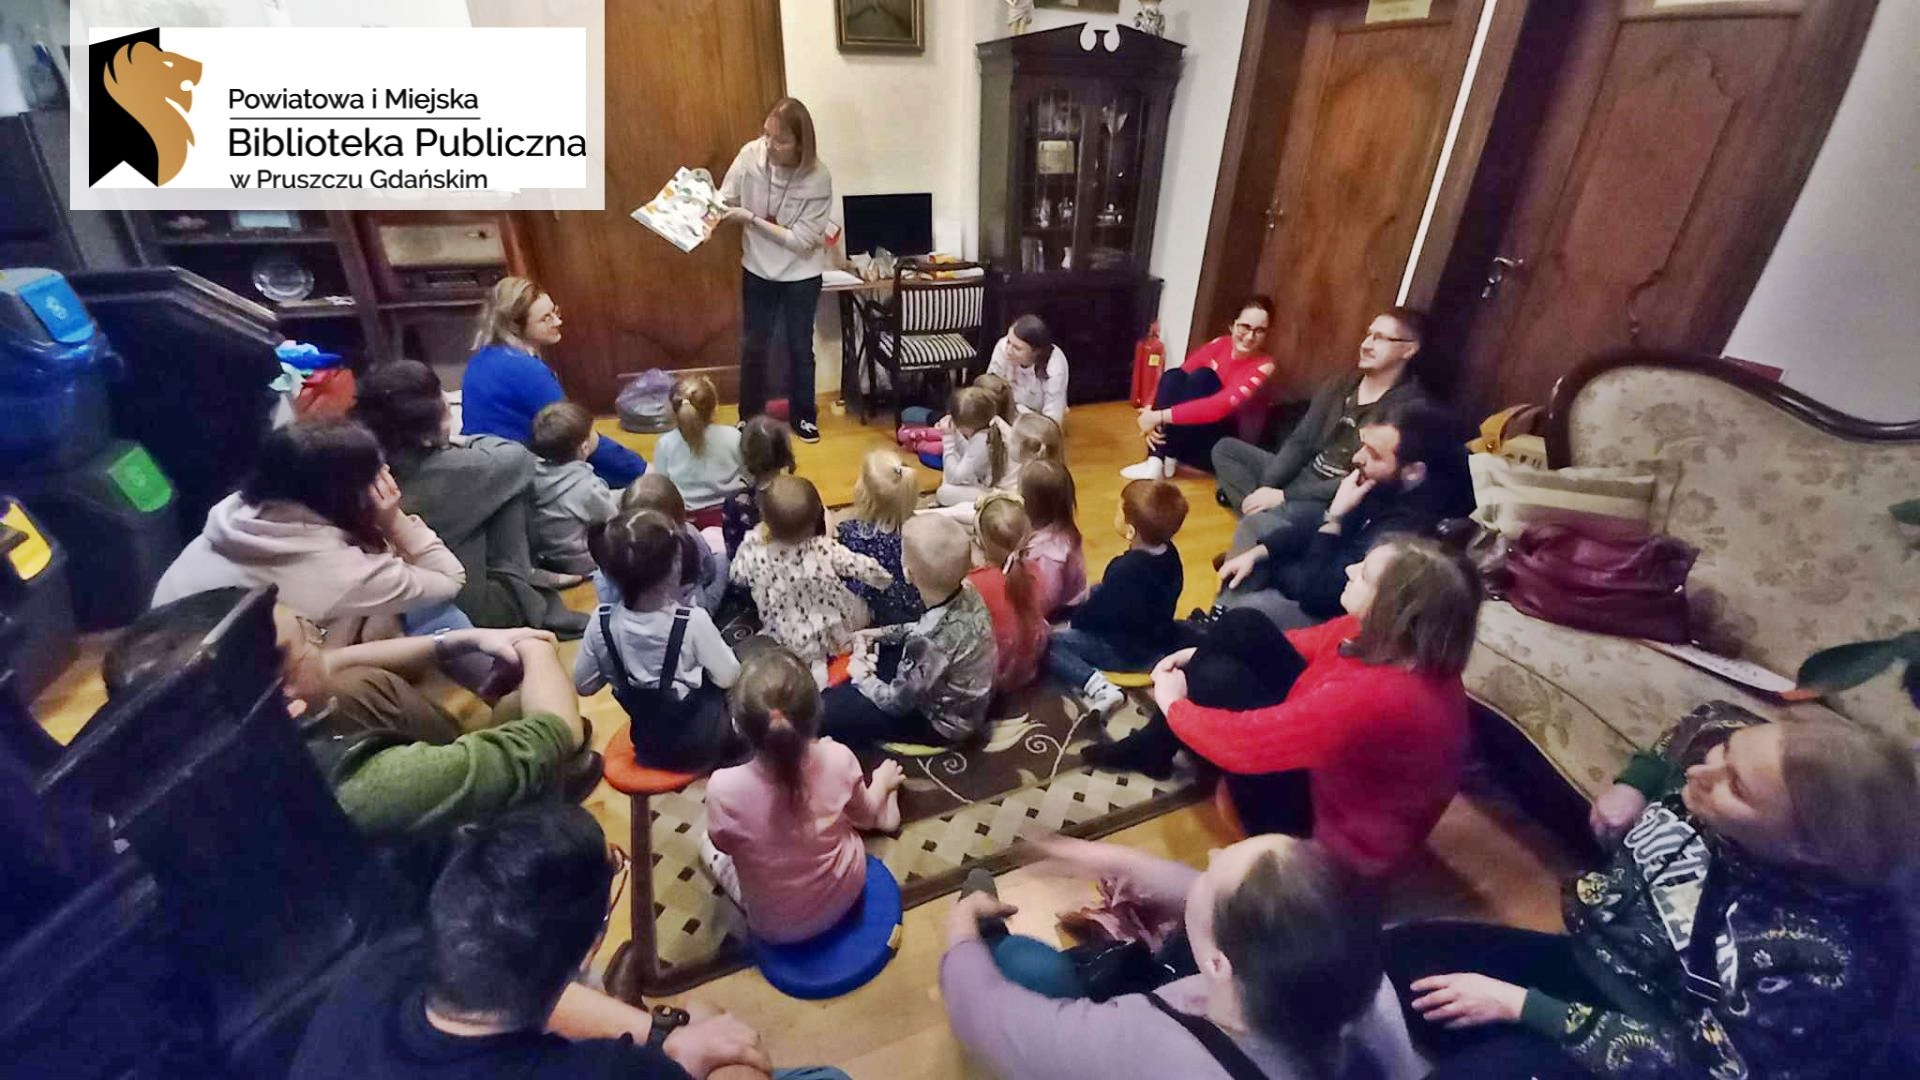 Duża grupa dzieci oraz dorosłych siedzi na dywanie i podłodze. Wszyscy patrzą w stronę bibliotekarki, która pokazuje ilustrację z czytanej książki. Na ilustracji kolorowego, kudłatego stworka.